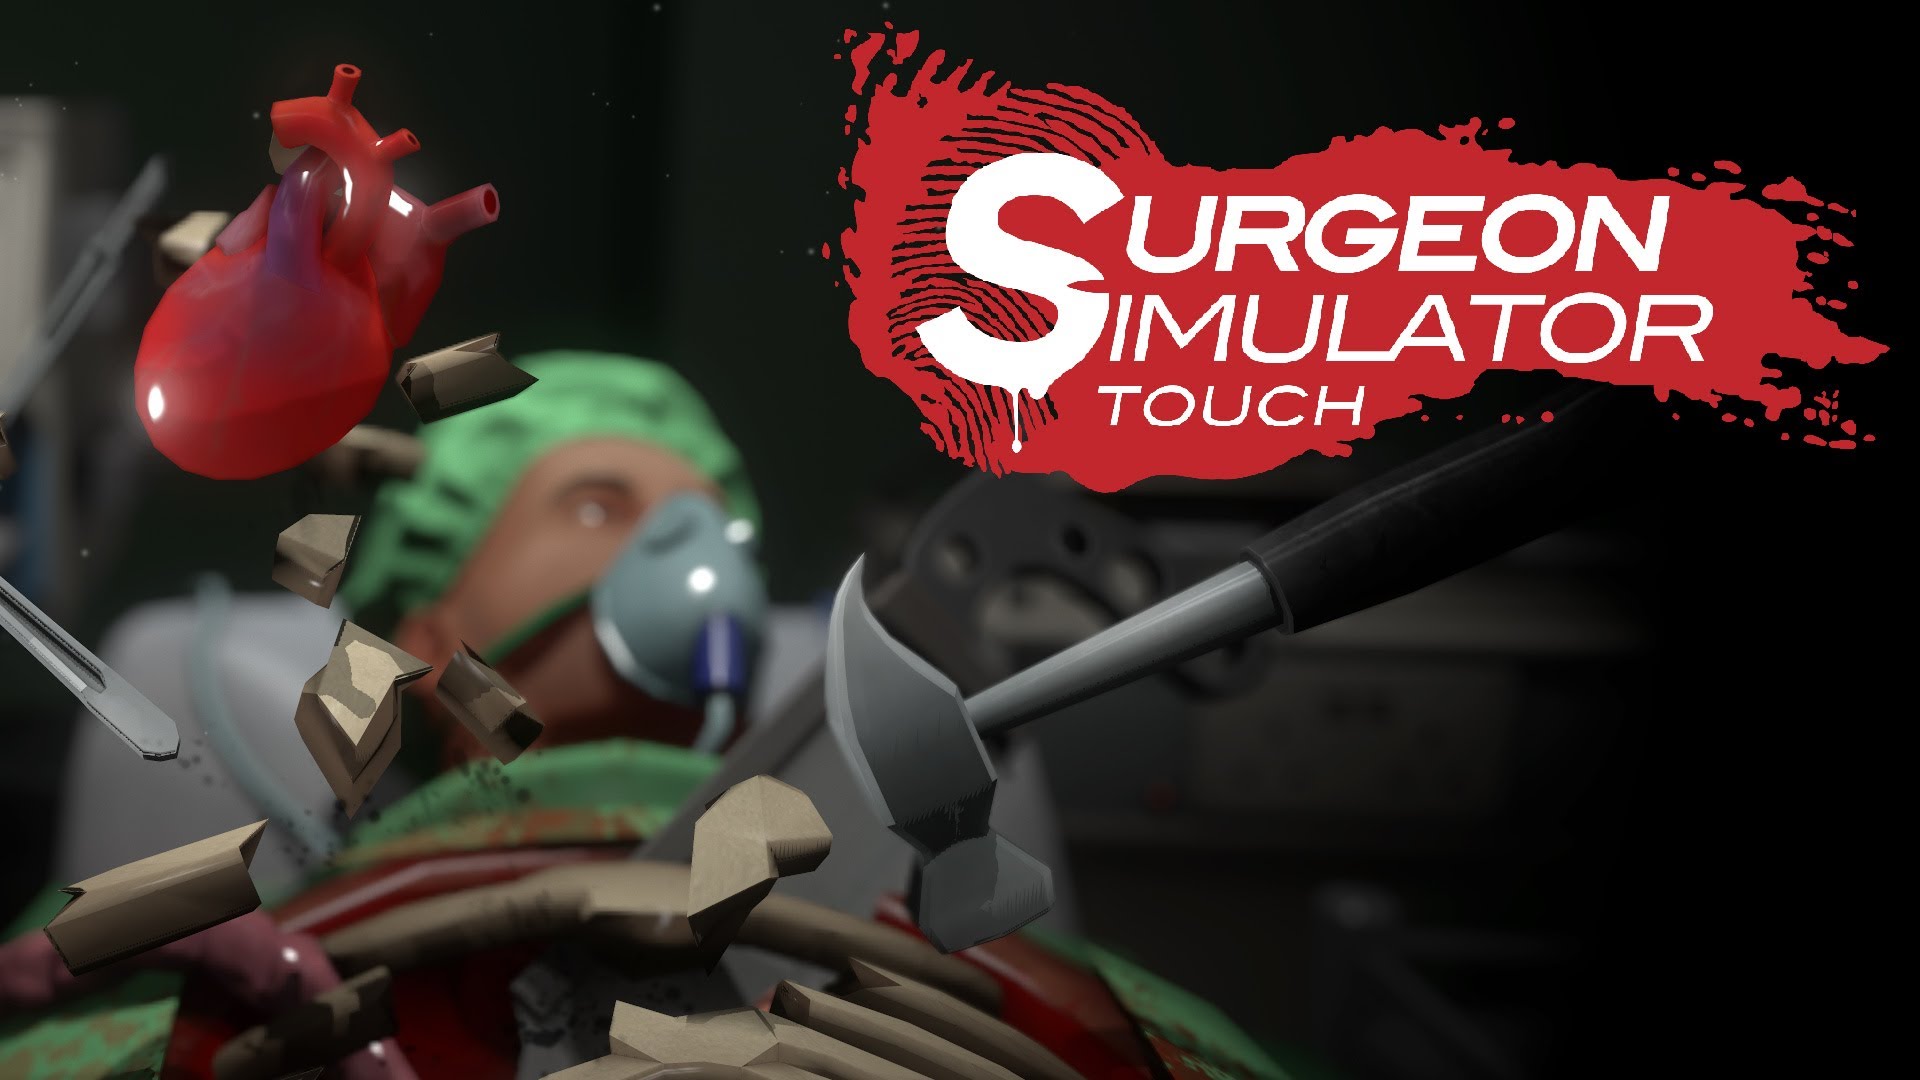 Surgeon simulator game free download